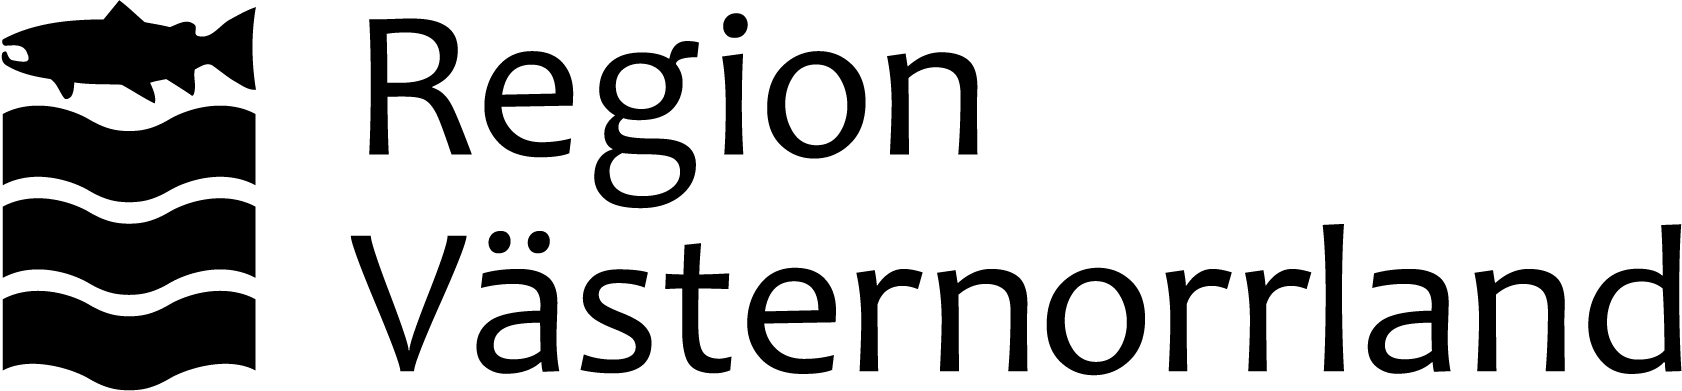 Sponsor: Region Västernorrland